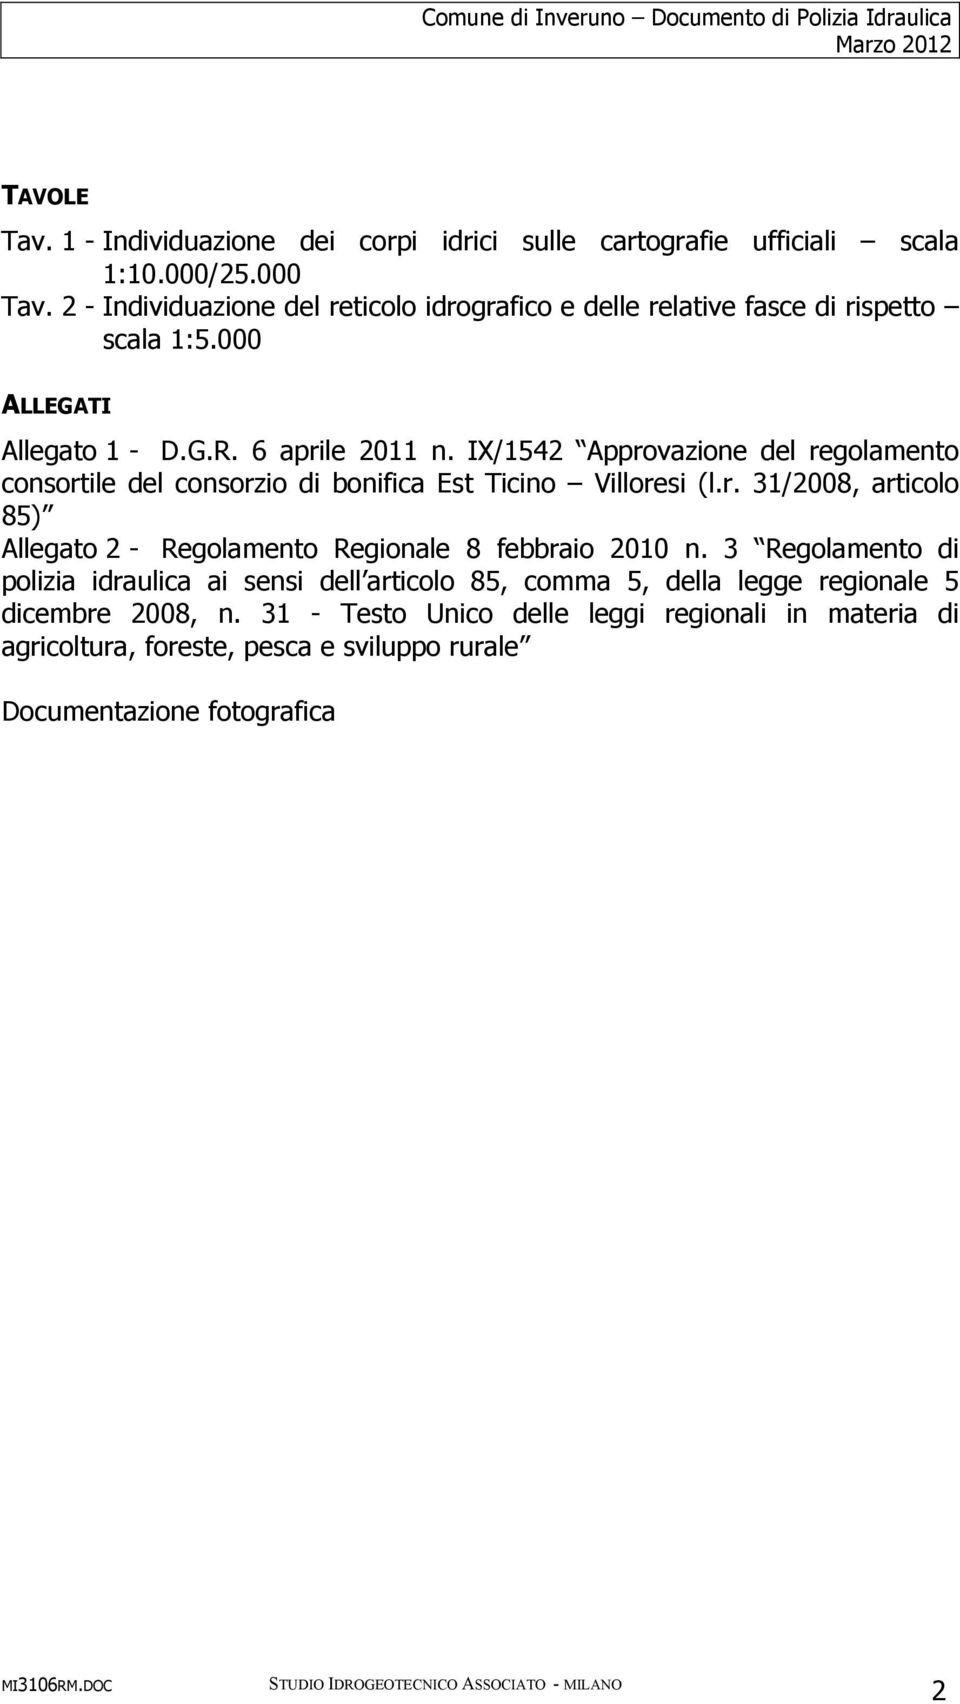 IX/1542 Approvazione del regolamento consortile del consorzio di bonifica (l.r. 31/2008, articolo 85) Allegato 2 - Regolamento Regionale 8 febbraio 2010 n.